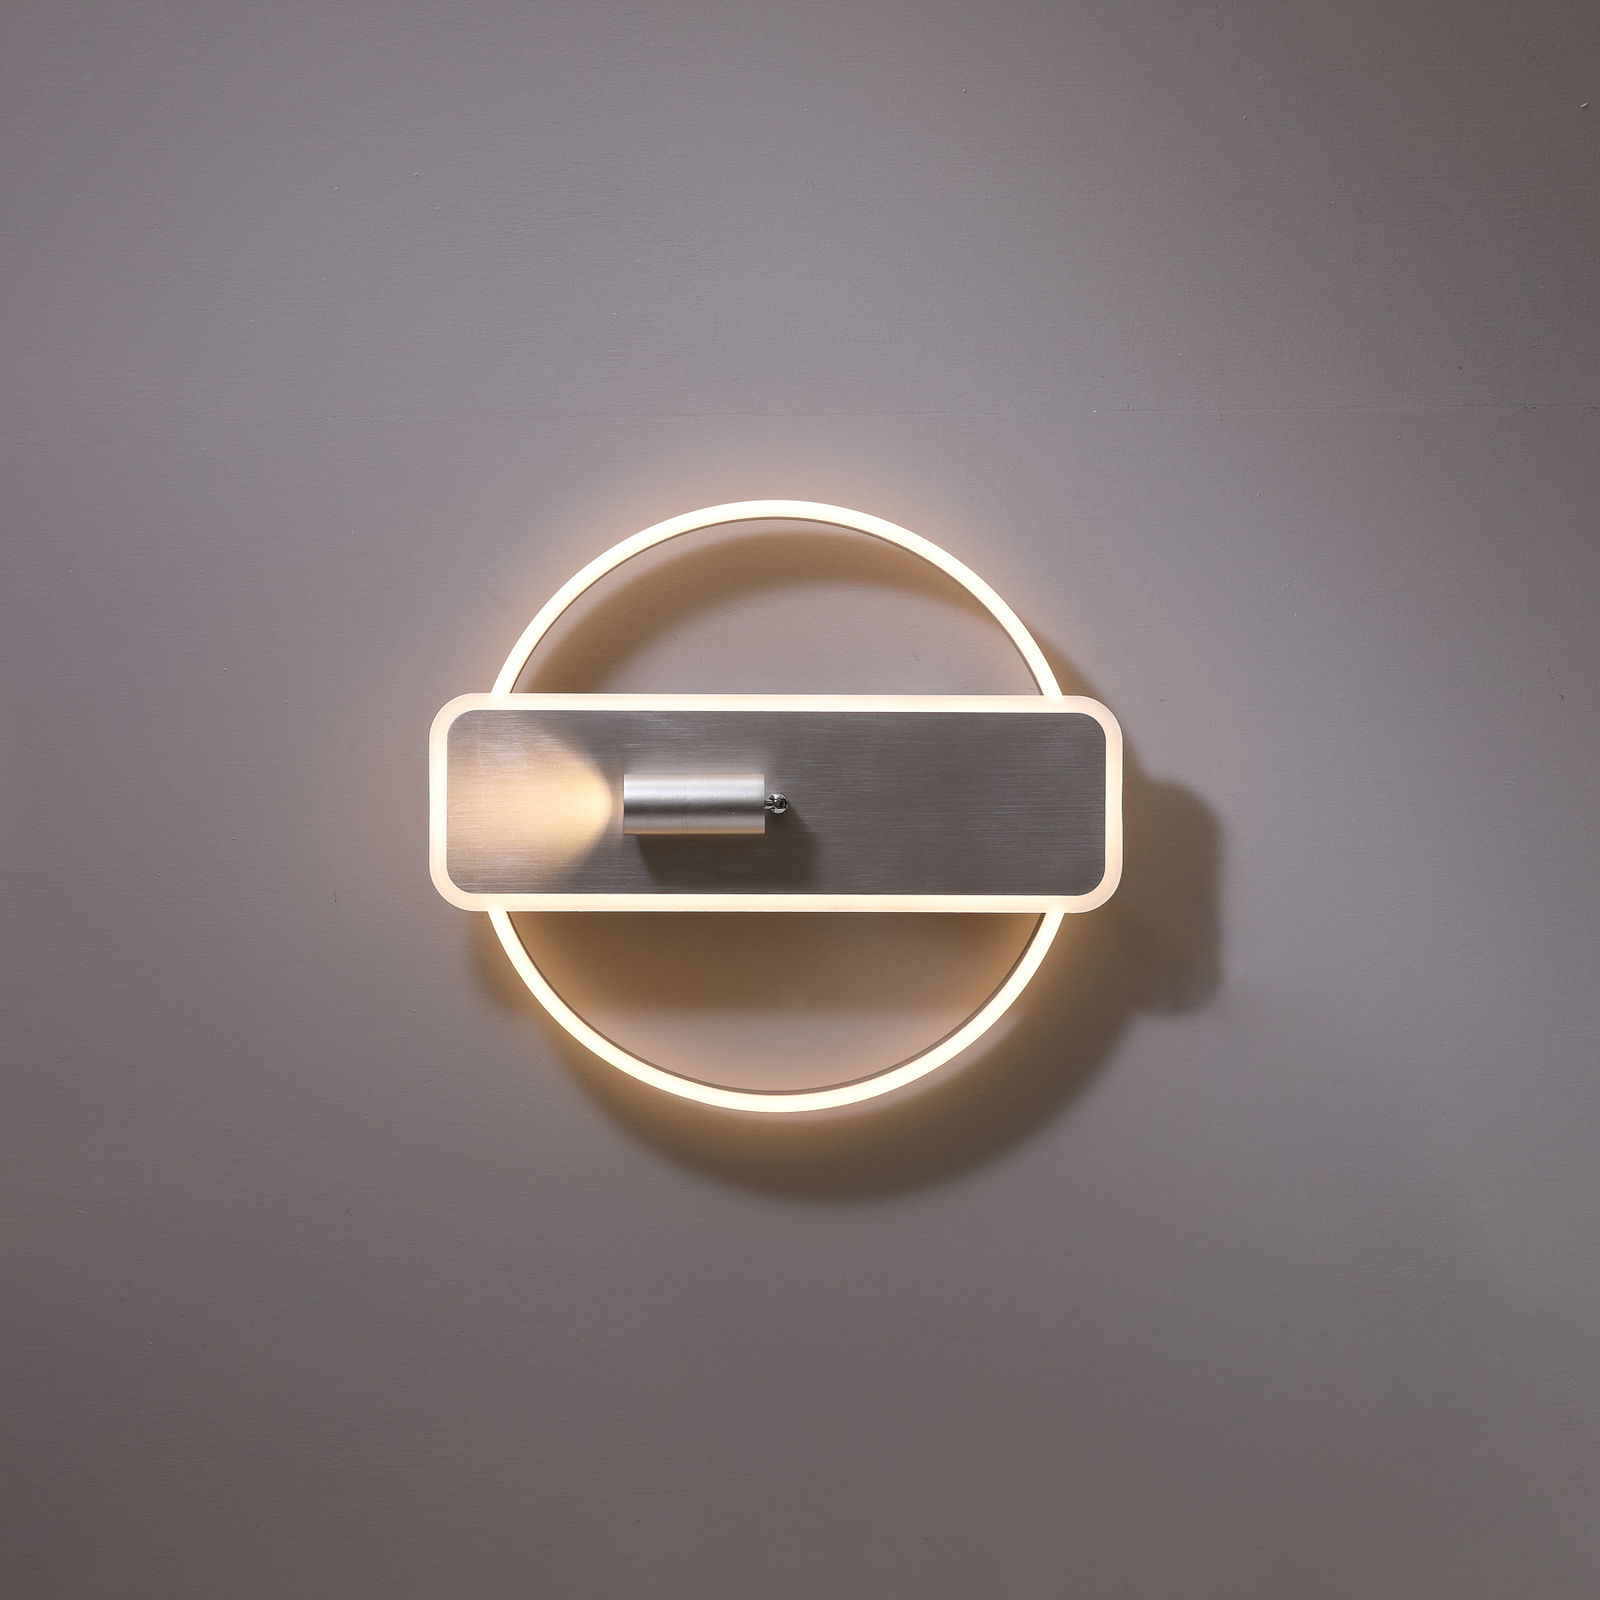 Lucande Damivan LED-Deckenlampe, rund, nickel